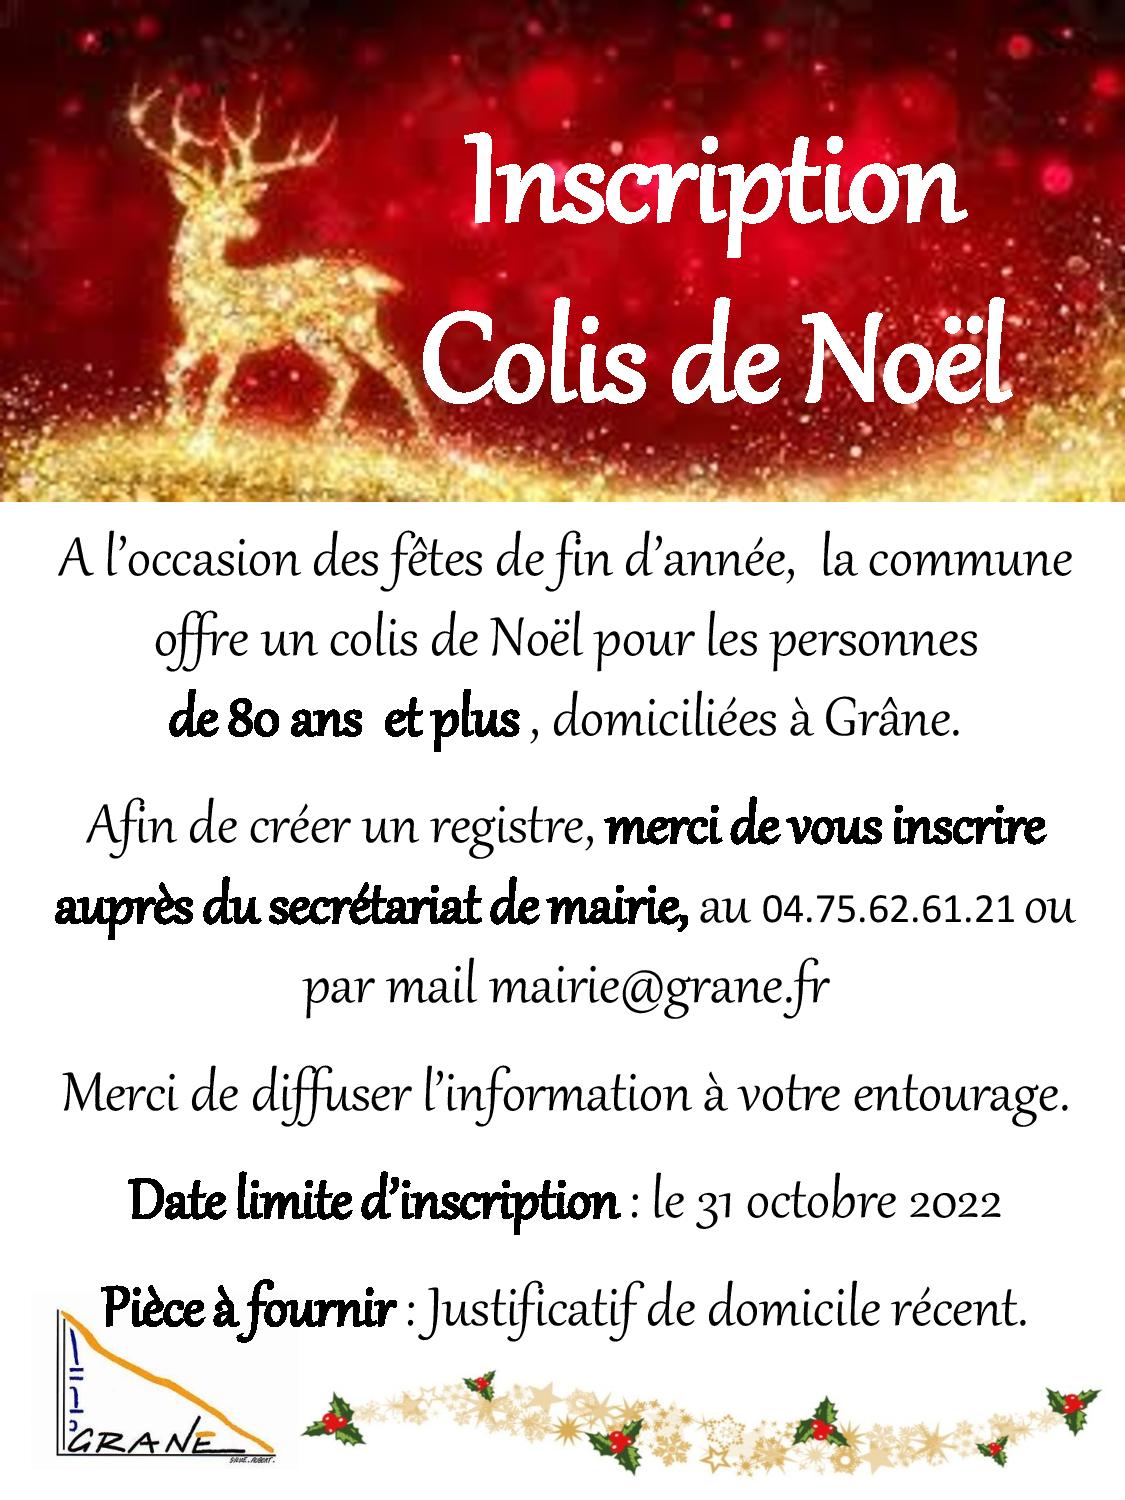 COLIS DE NOEL Inscription-page-001.jpg